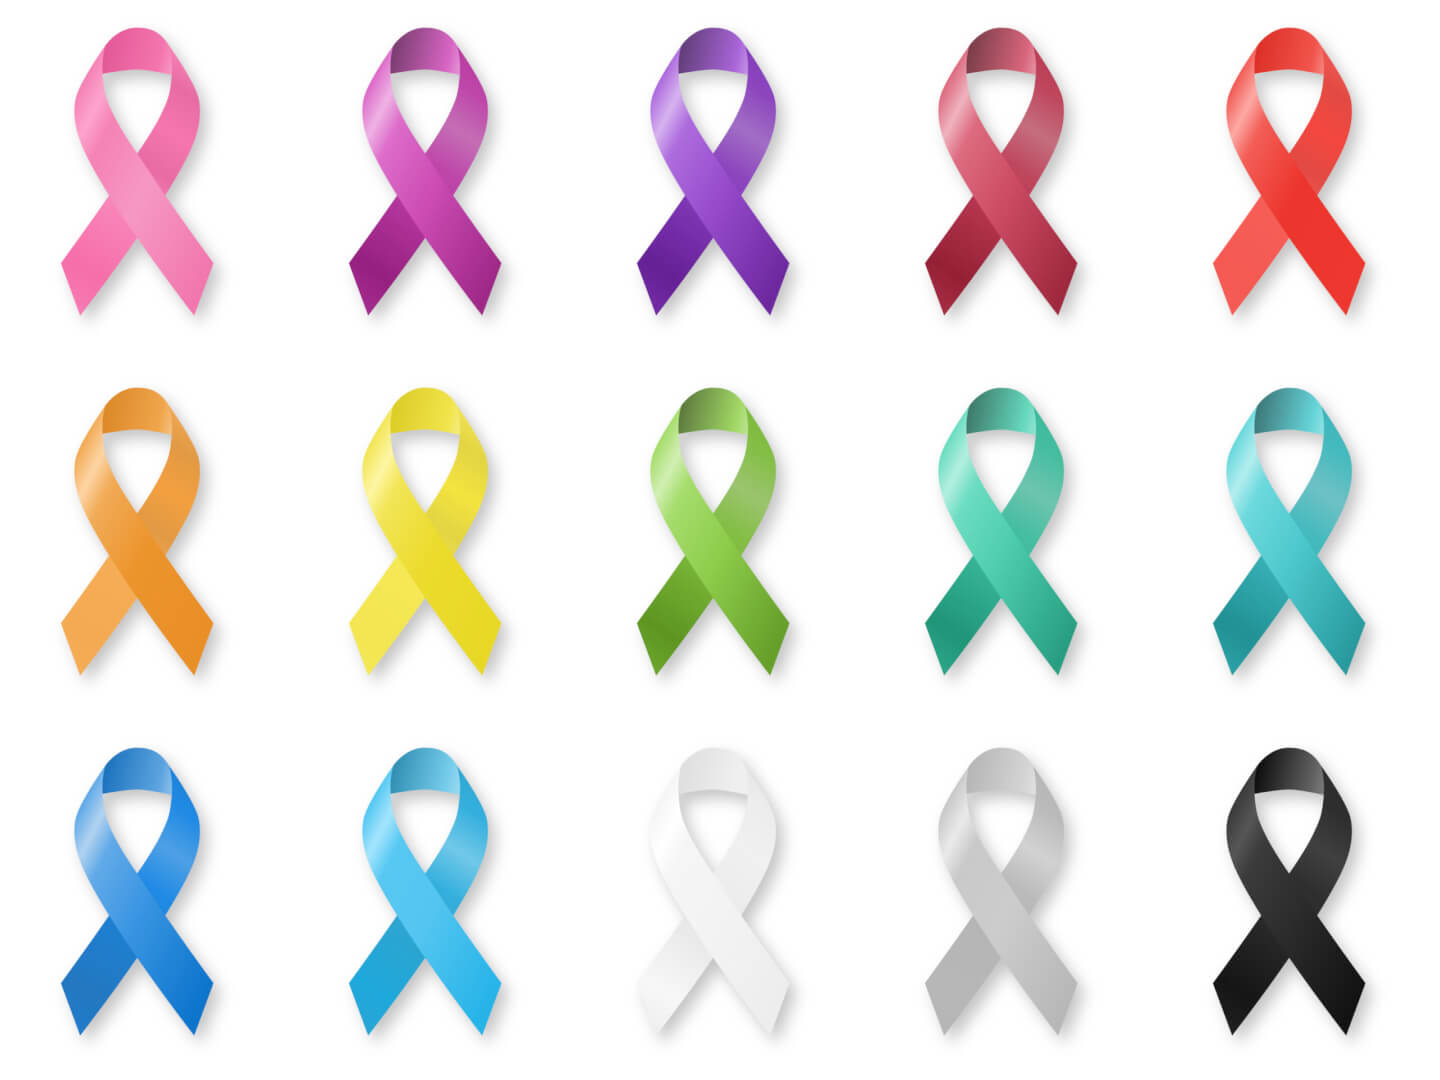 Aparece en la imagen el total de lazos de colores que simbolizan y rinden homenaje a los pacientes con cáncer. Cada tipo de cáncer tiene un color asignado en el lazo. 